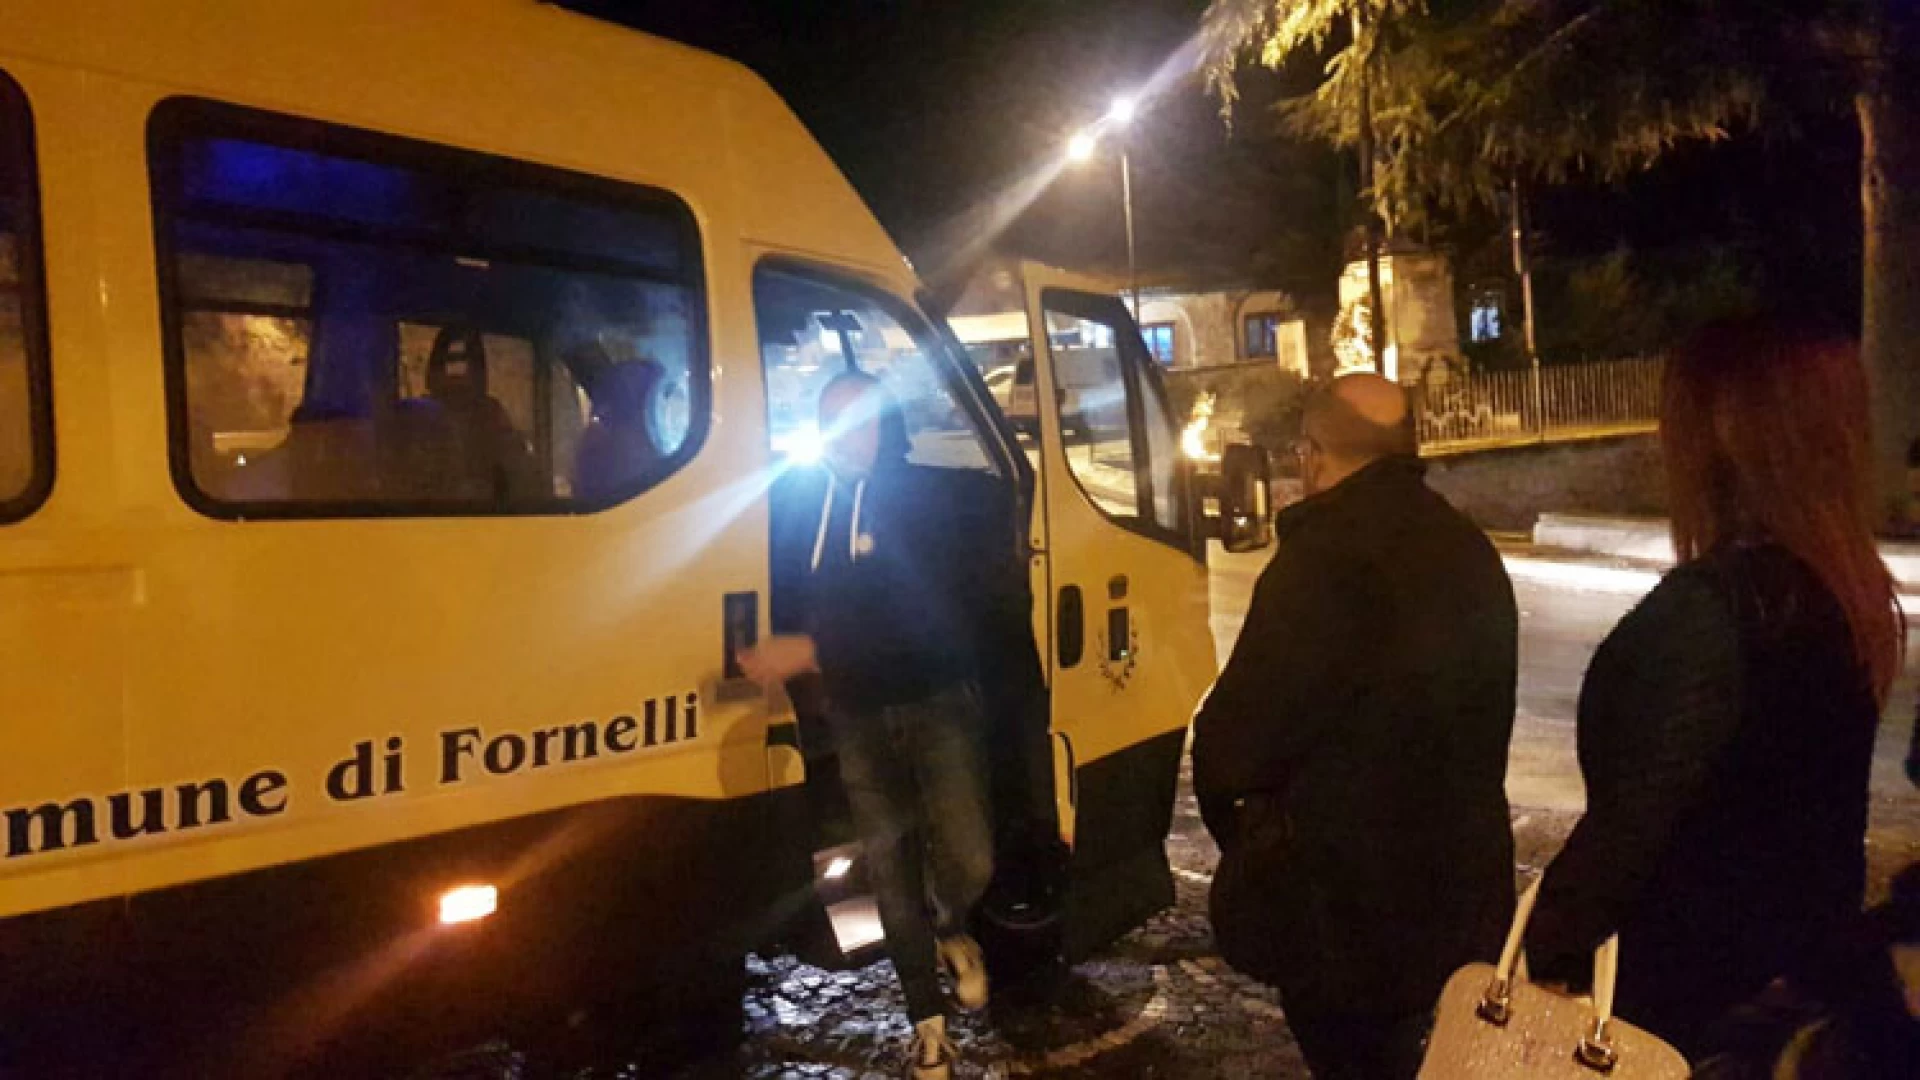 Fornelli: in paese arriva il nuovo scuolabus grazie all’iniziativa della Regione Molise. “Continuiamo la politica della sicurezza”. Così il sindaco Tedeschi.